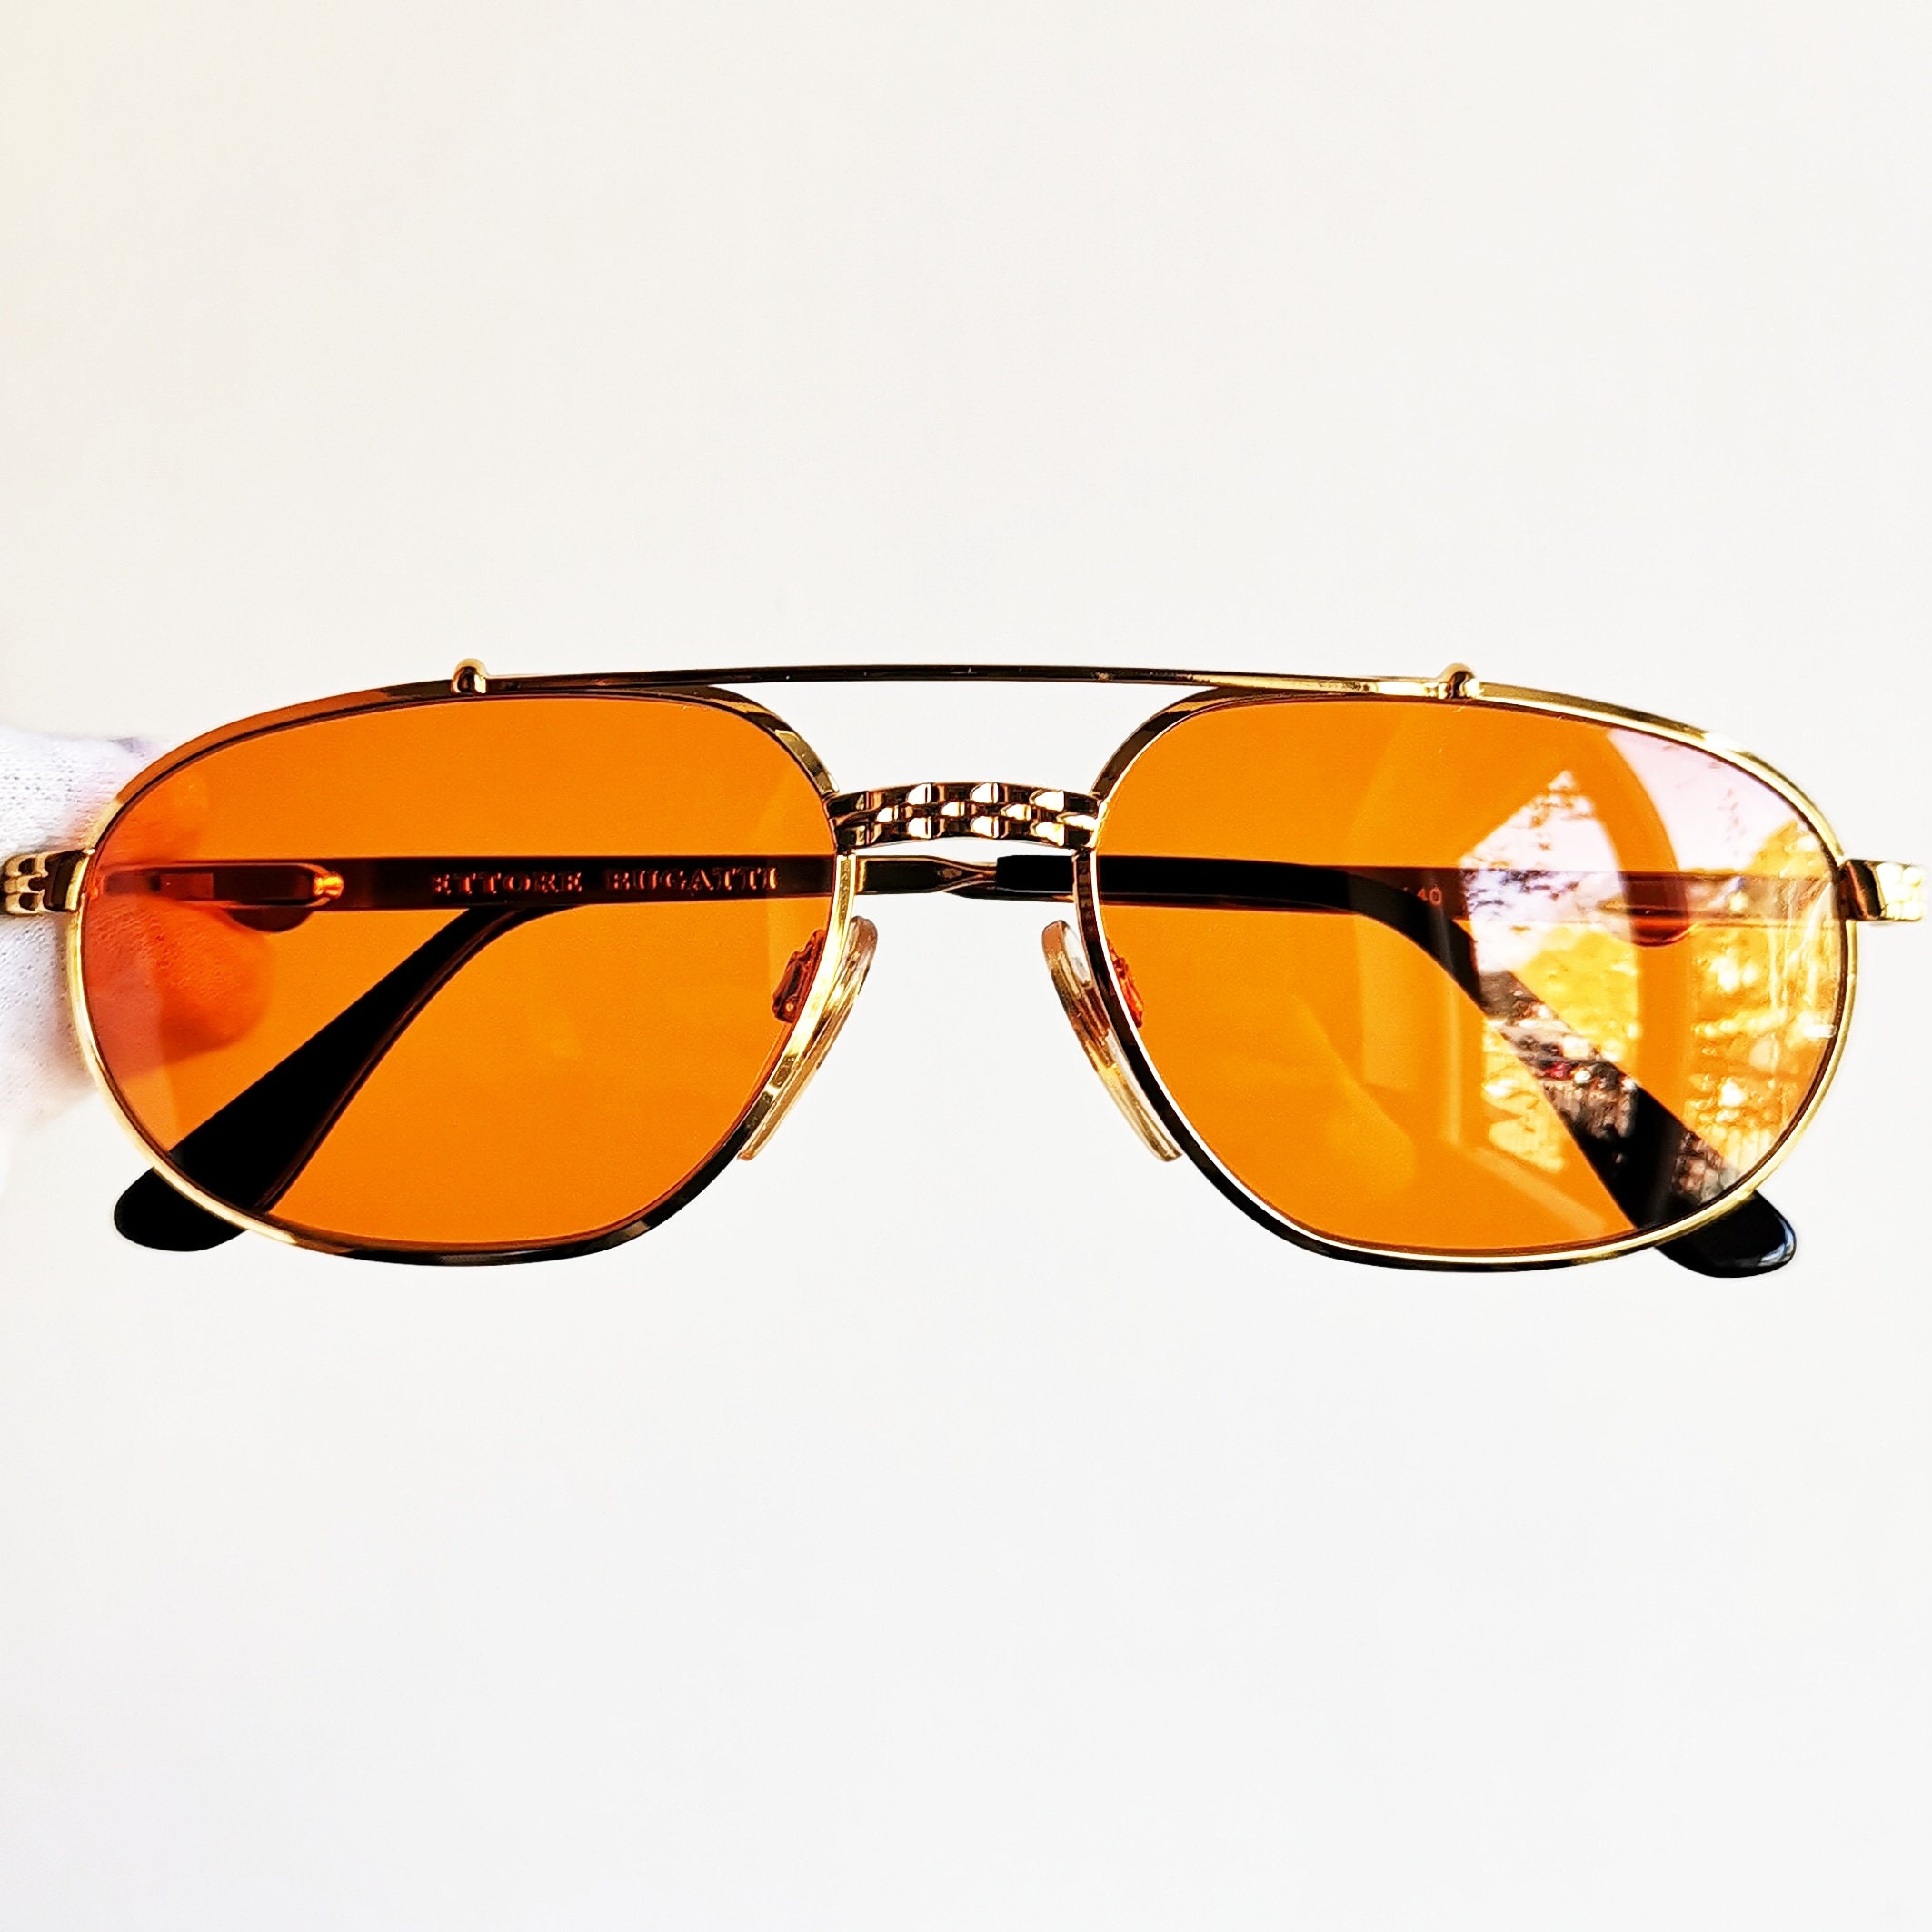 BUGATTI Gold Filled Plated Sunglasses Vintage Rare Square 